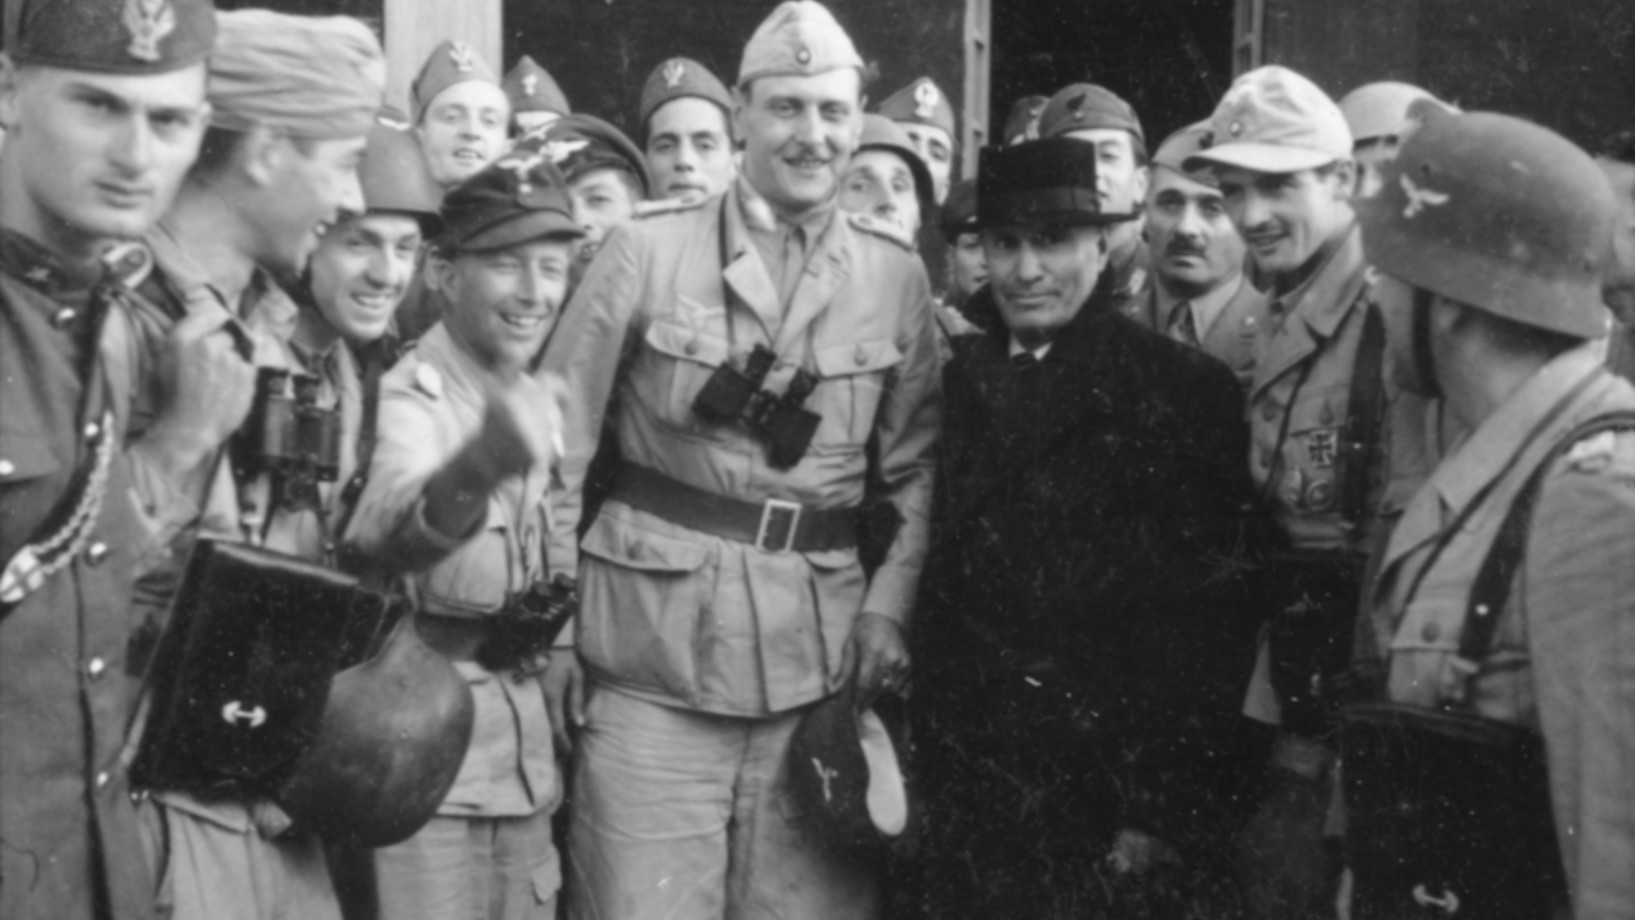 Benito Mussolini mit (links von ihm) Otto Skorzeny, SS-Hauptsturmführer. Bild: Deutsches Bundesarchiv, Fotograf: Toni Schneiders, Bild Nr. 101I-567-1503C-15, aufgenommen am 12. September 1943